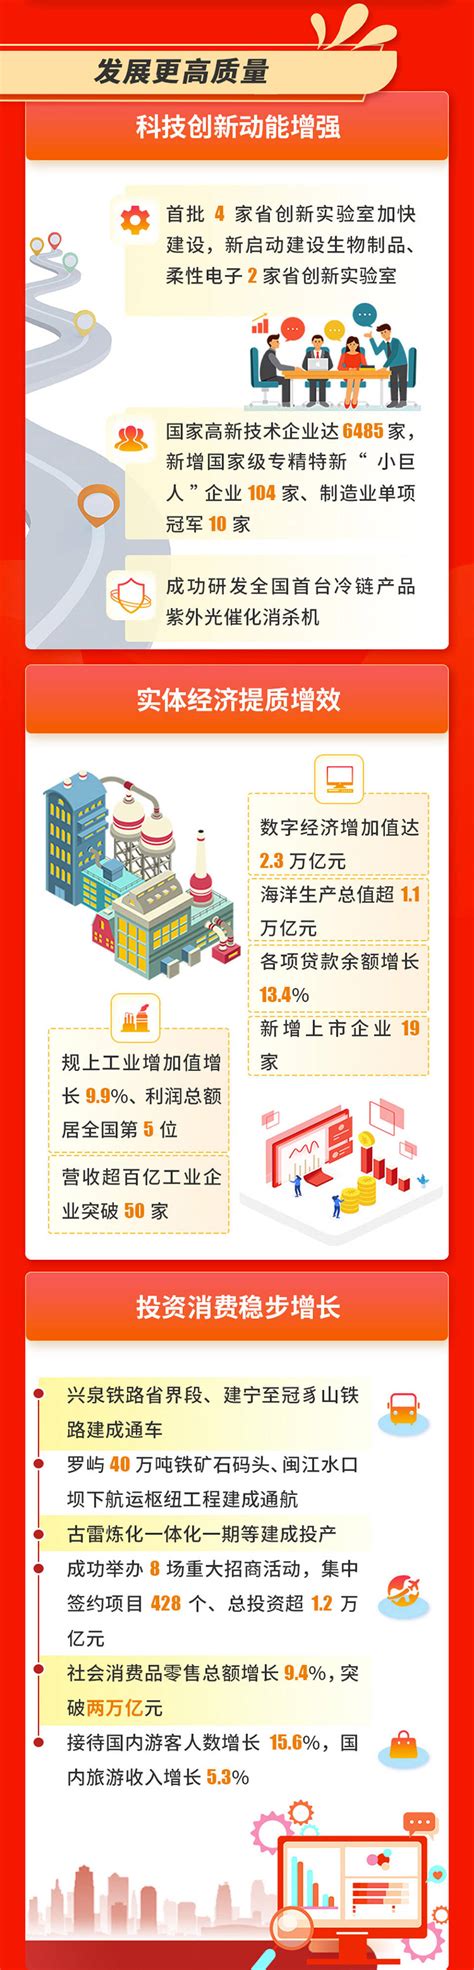 一图读懂丨2022福建省政府工作报告-中国网海峡频道